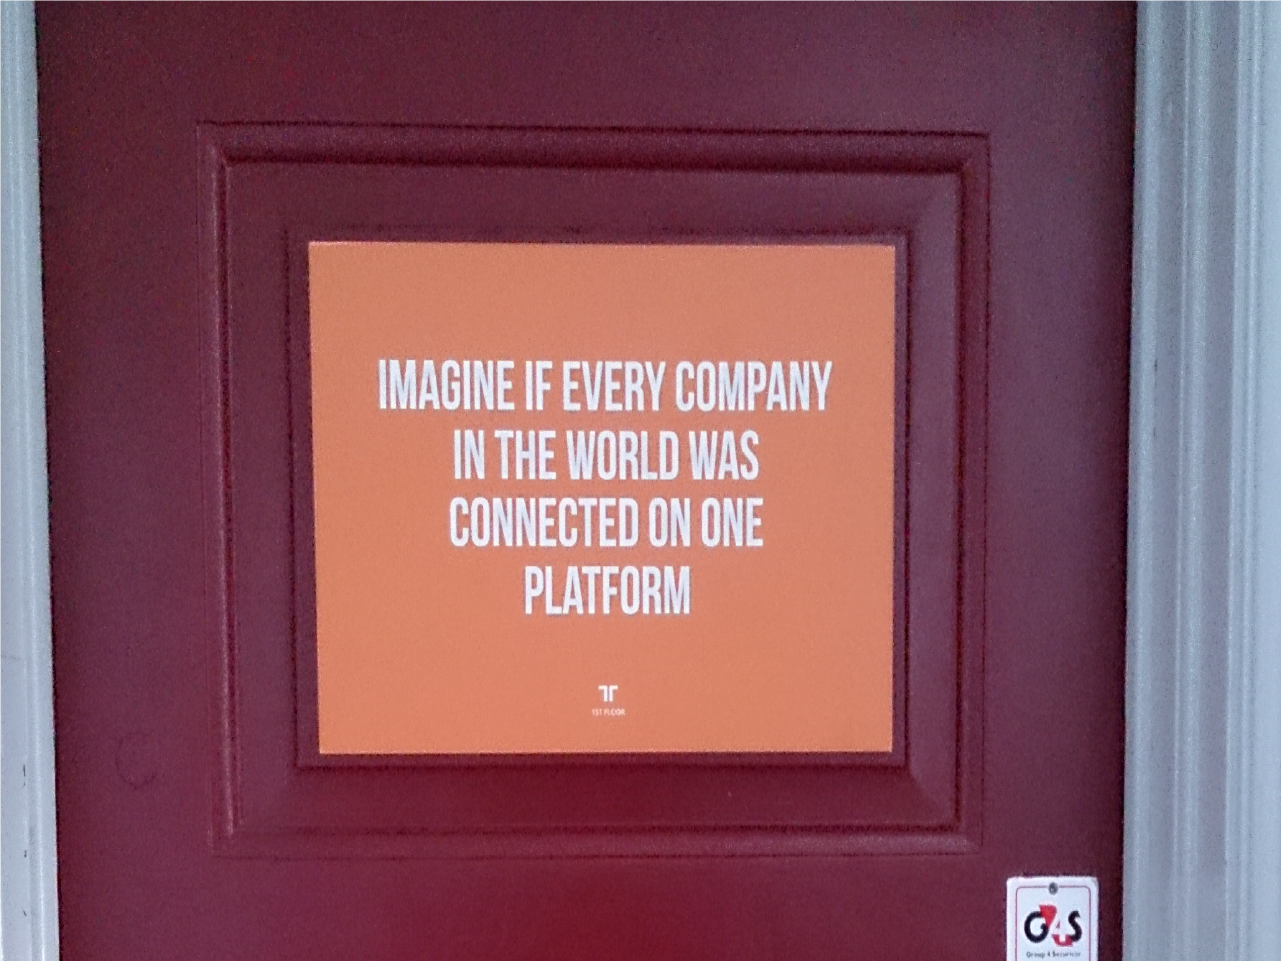 2014年まだ古いアパートの一室にあったコペンハーゲンオフィスの入り口のドアに書かれたメッセージ。「世界のすべての企業が1つのプラットフォームでつながっていたらどうなるかを想像しよう」この基本思想が、Tradeshiftのすべての機能やサービスの原理原則になっている。